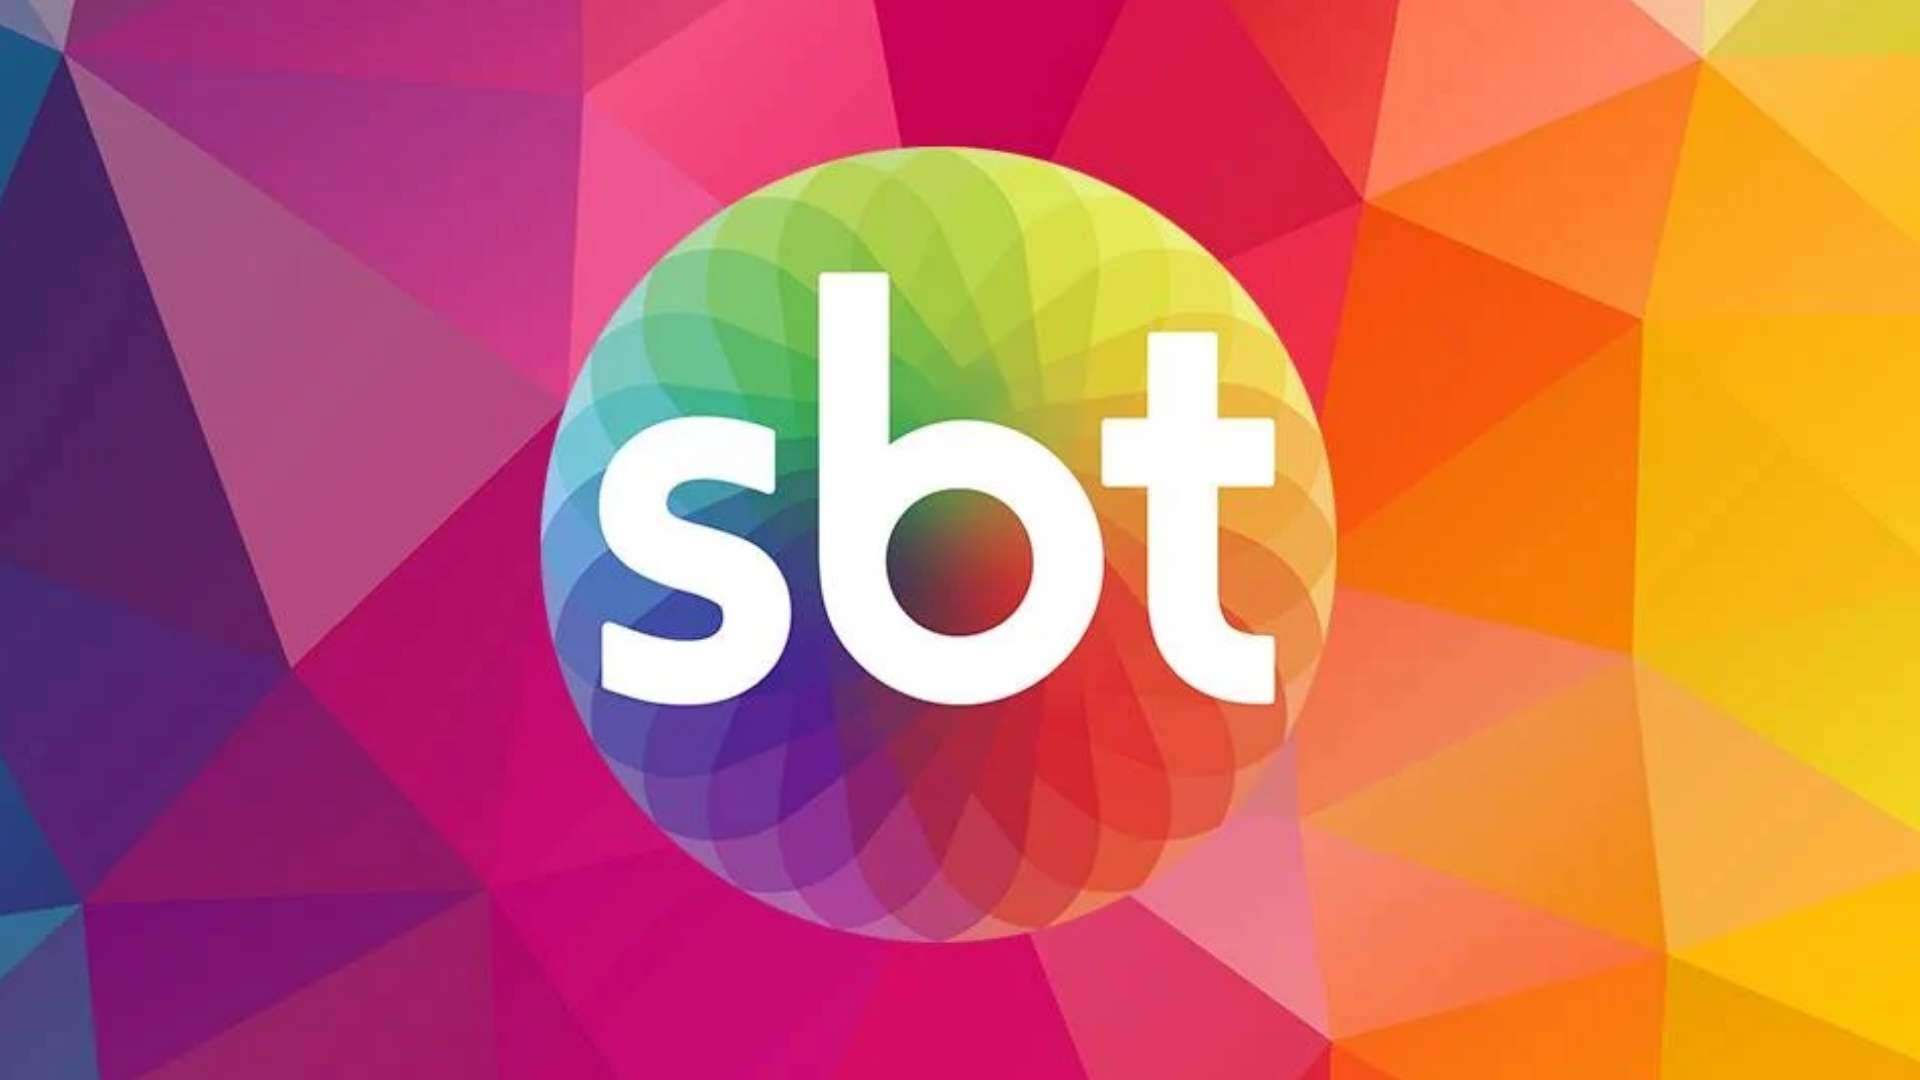 Guerra entre emissoras? SBT passa a perna na Record e contrata jornalistas para novo programa - Metropolitana FM